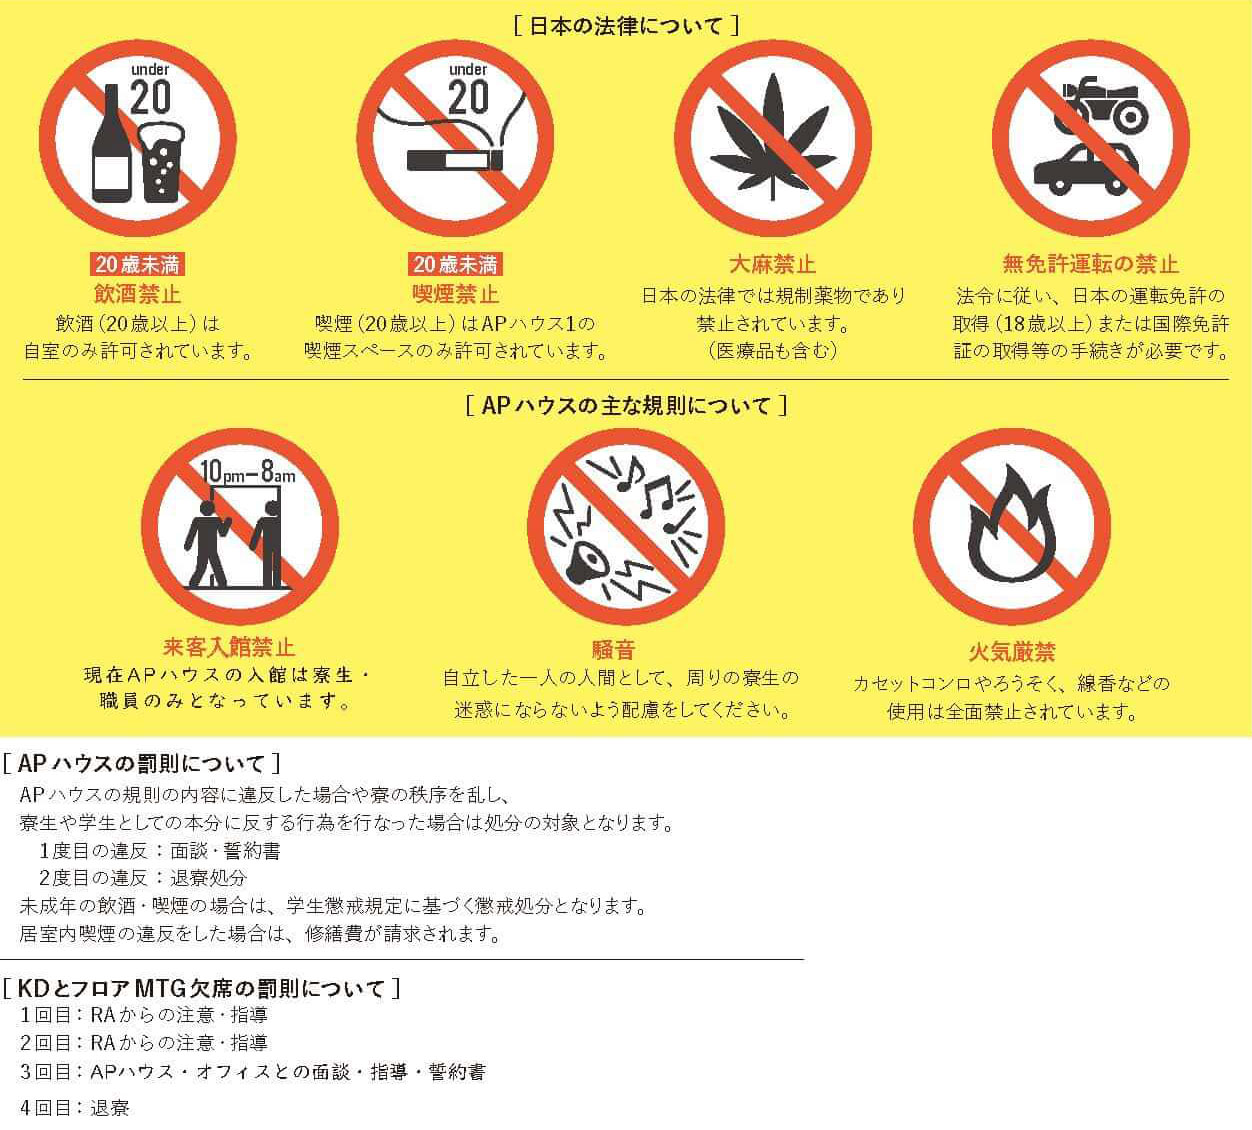 日本の法律と寮の規則について